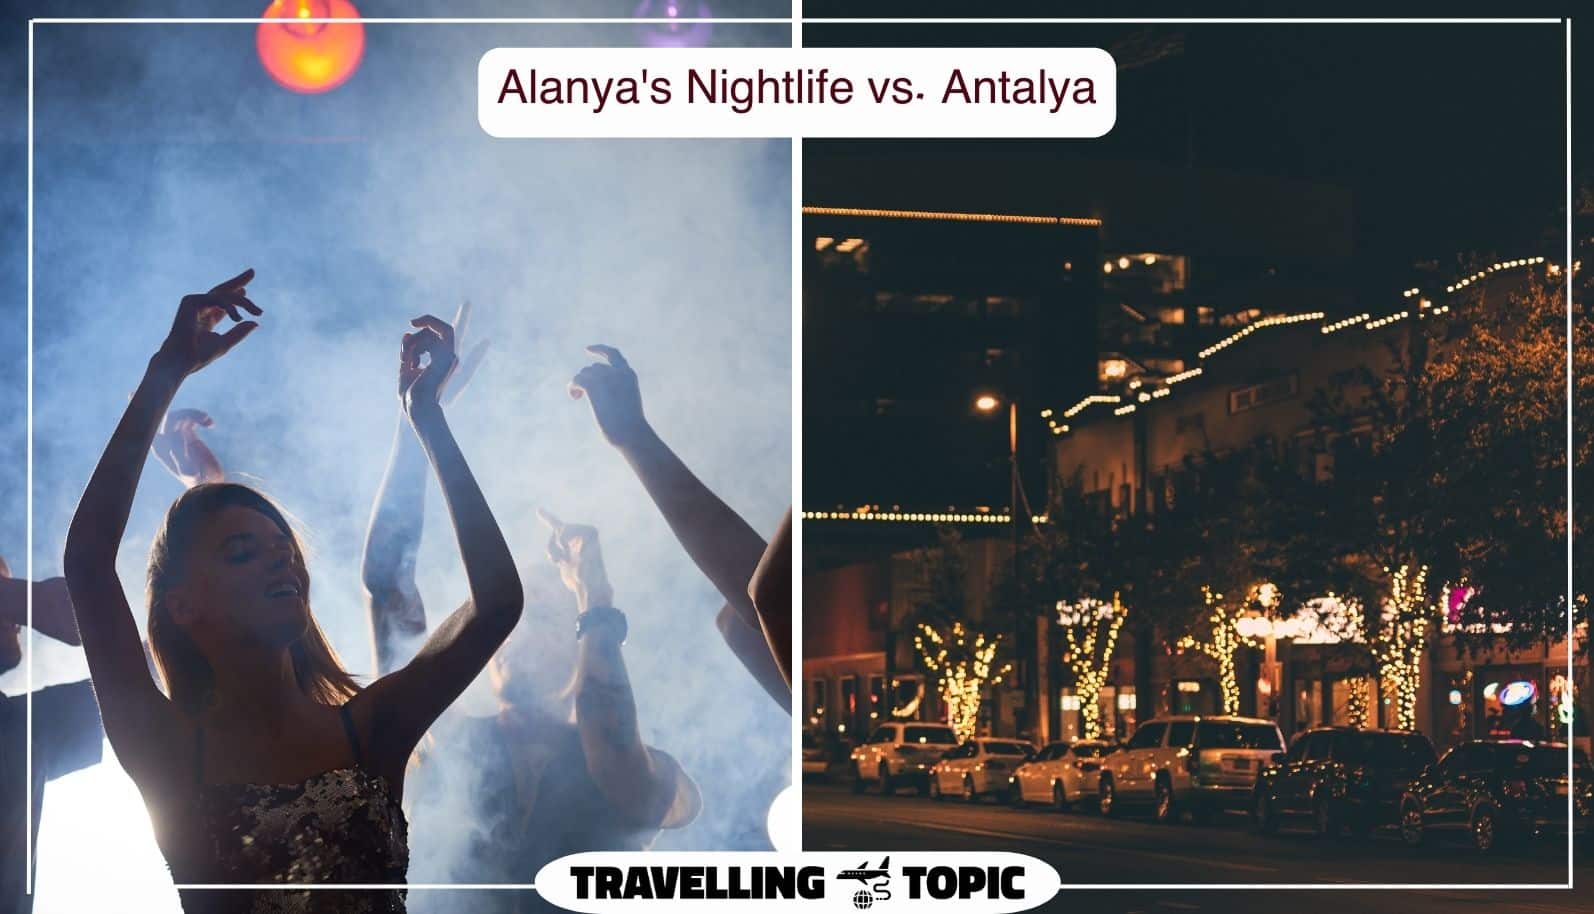 Alanya's Nightlife vs. Antalya